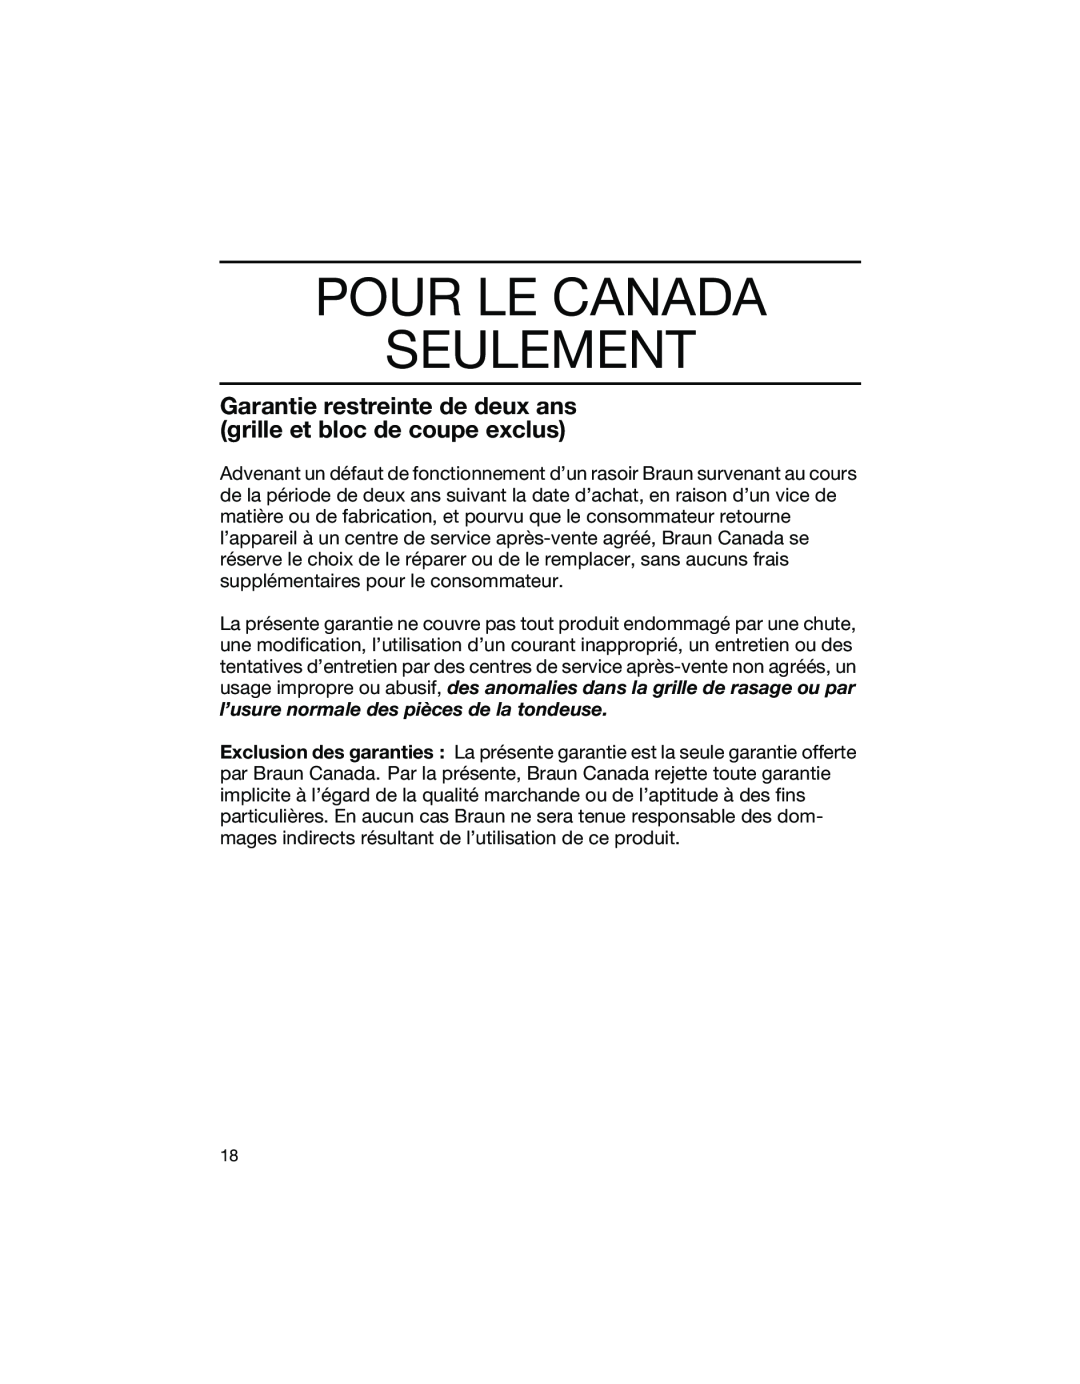 Braun 1775 manual Pour Le Canada Seulement, Garantie restreinte de deux ans grille et bloc de coupe exclus 